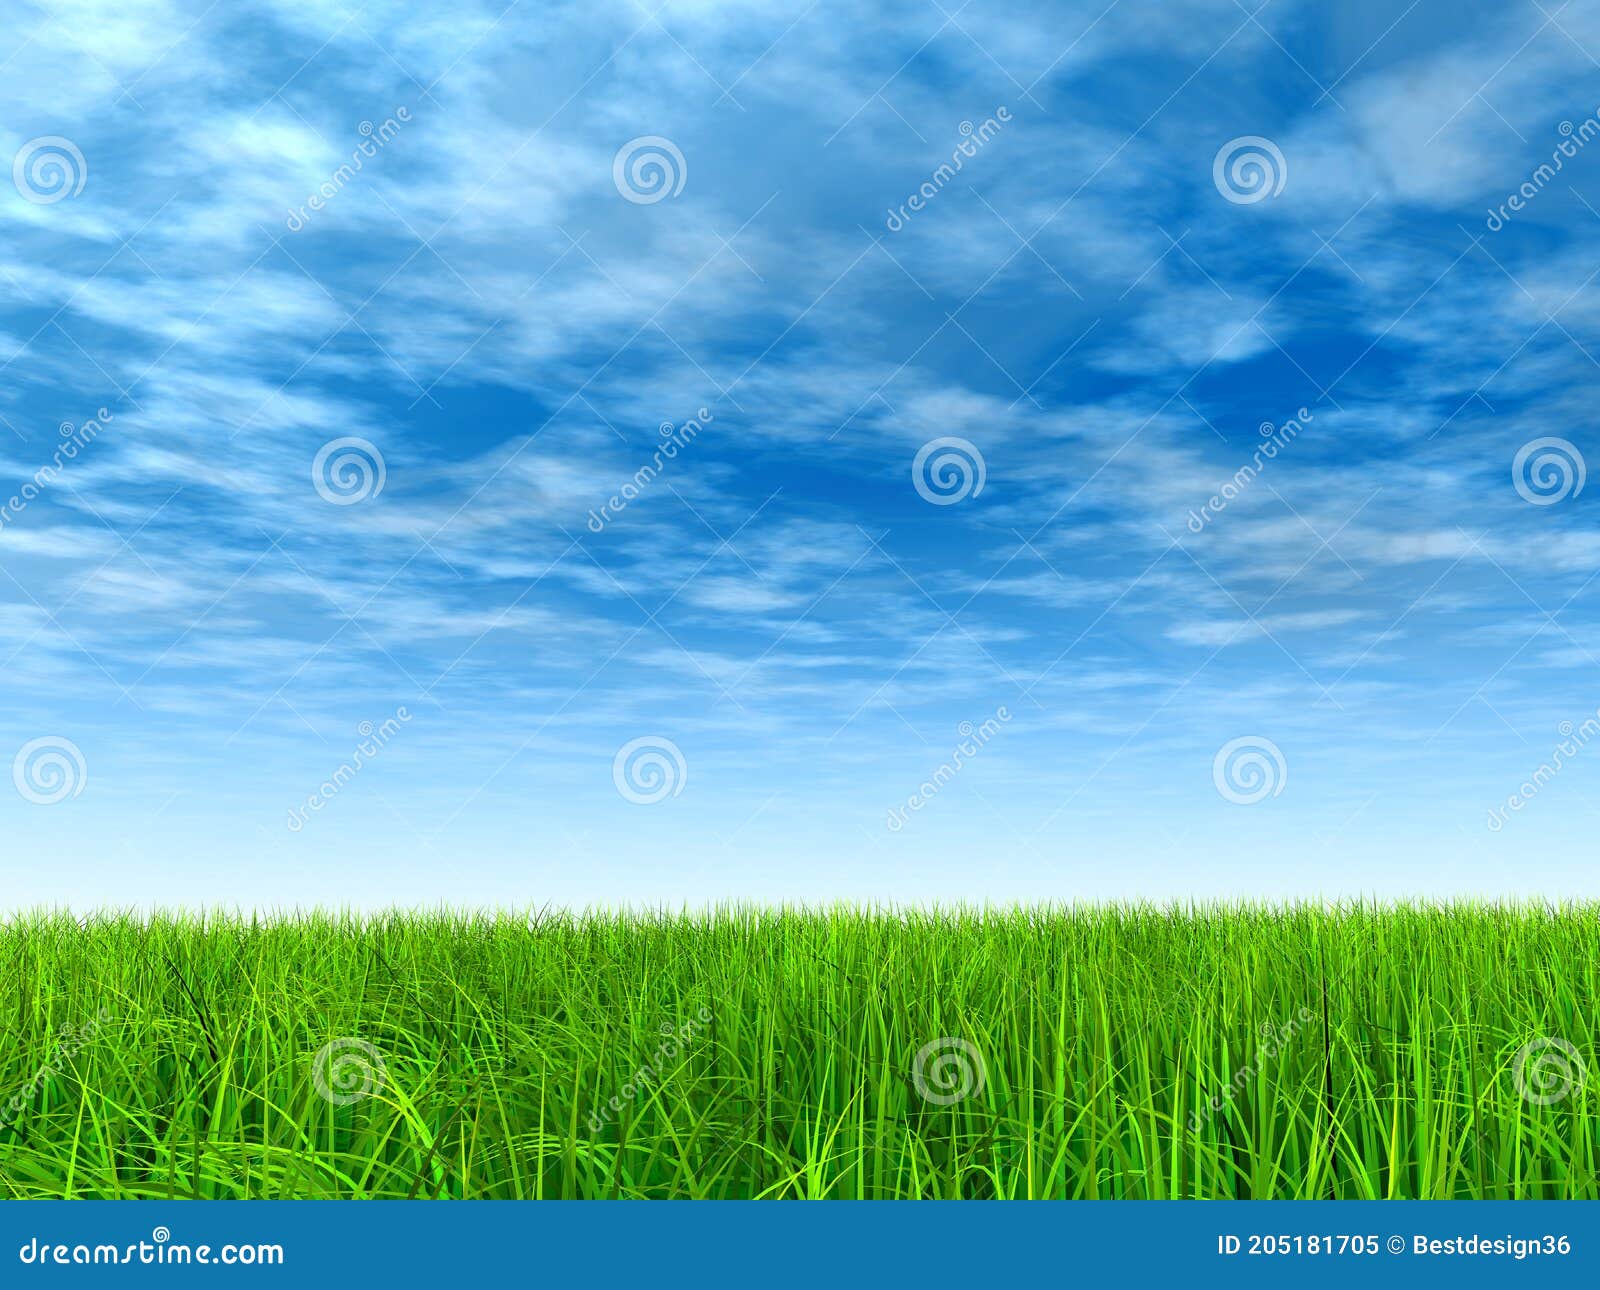 Cỏ (Grass): Hãy cùng chiêm ngưỡng vẻ đẹp tuyệt vời của loại cây cỏ trong bức tranh tô điểm cho không gian sống của bạn! Những sắc màu tươi sáng và nguyên sơ của cỏ sẽ mang lại cảm giác yên bình và thư giãn cho bạn trong những ngày bận rộn. 